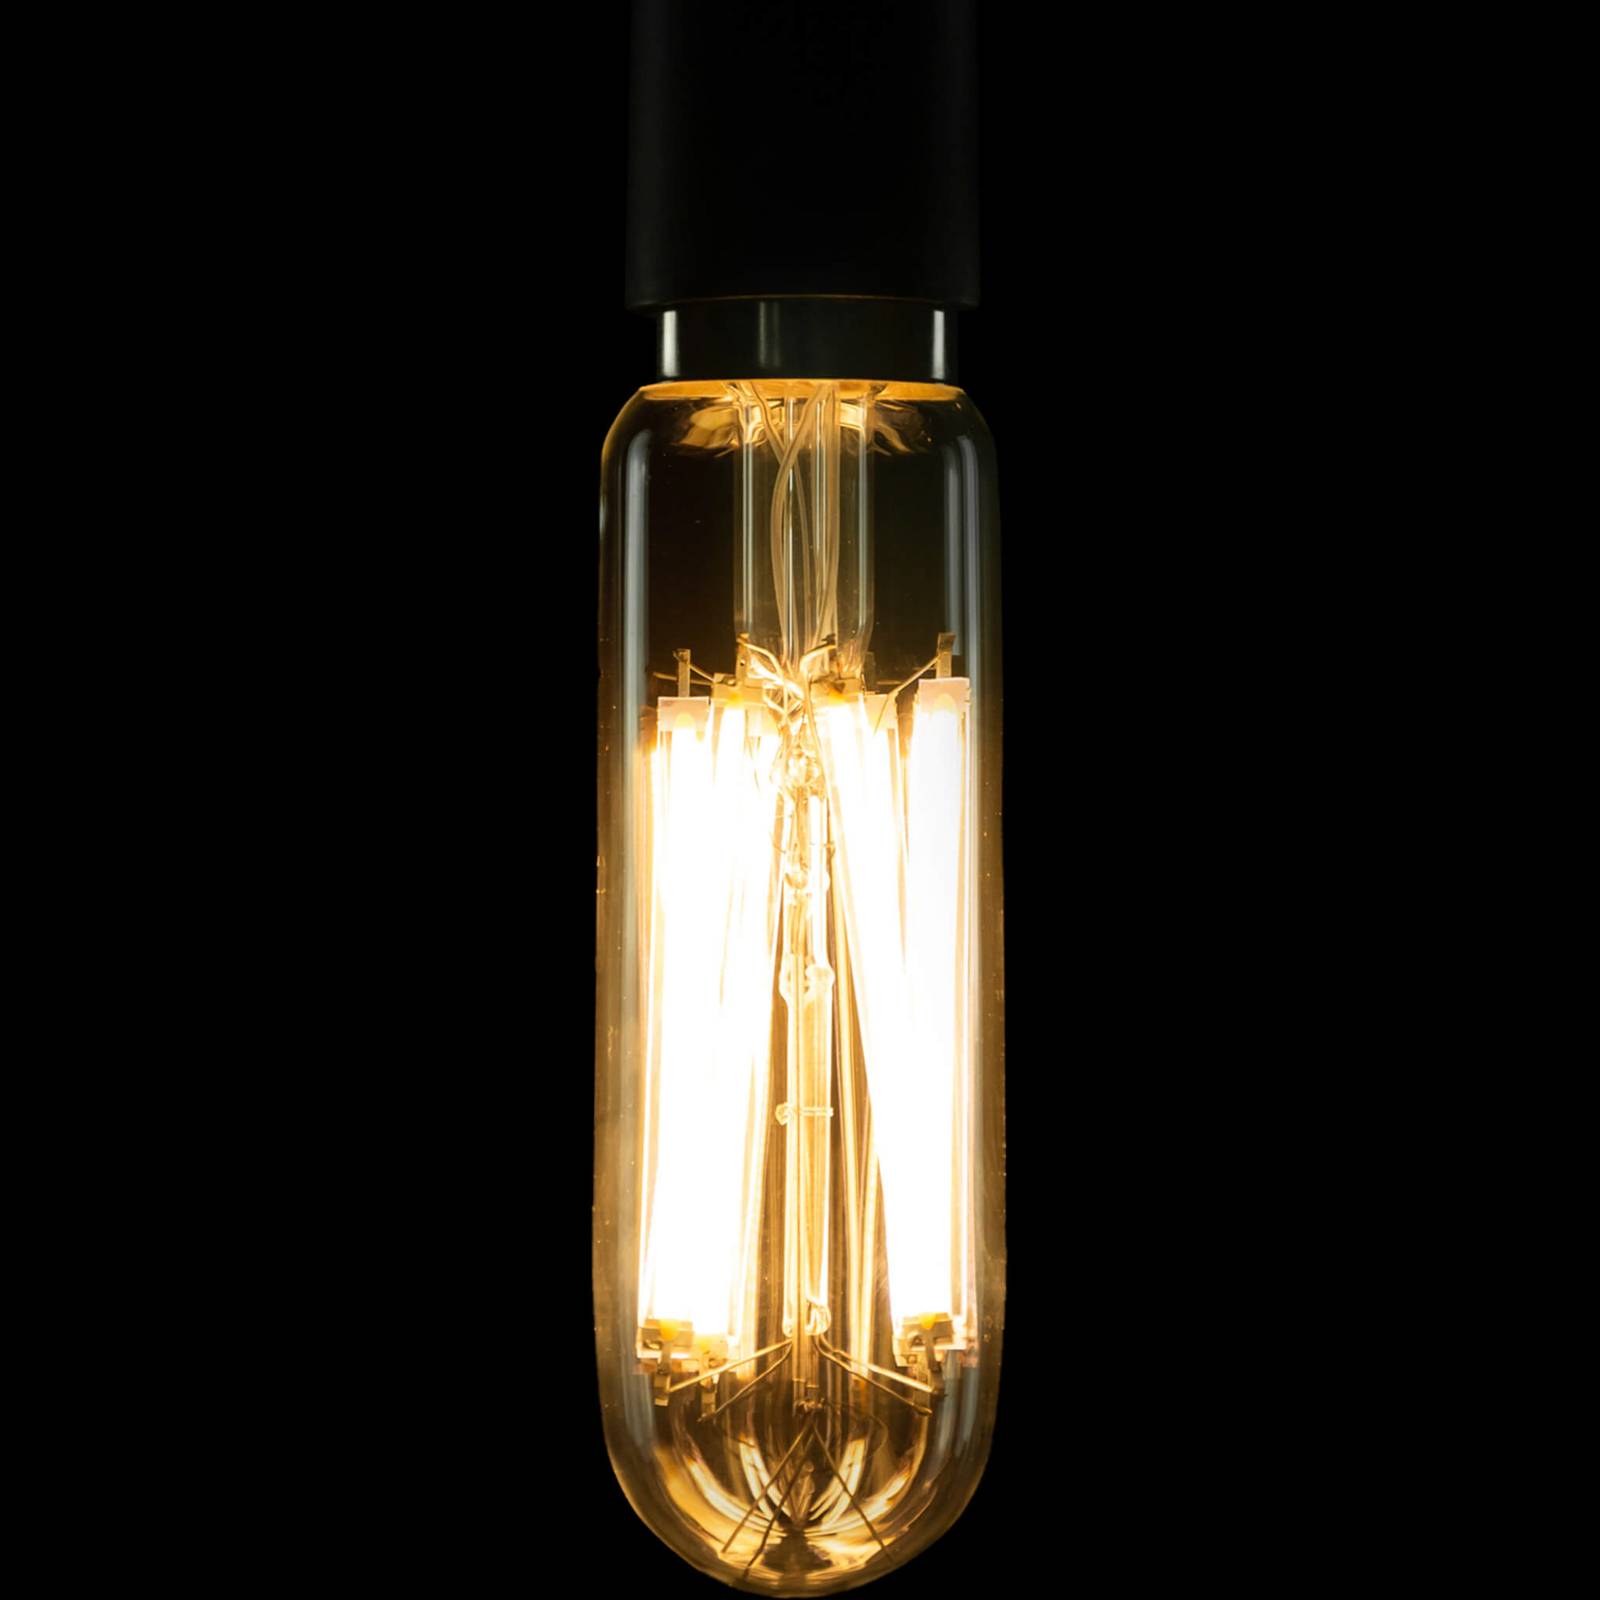 SEGULA Bright LED-rørpære E27 14 W klar Ø 5 cm